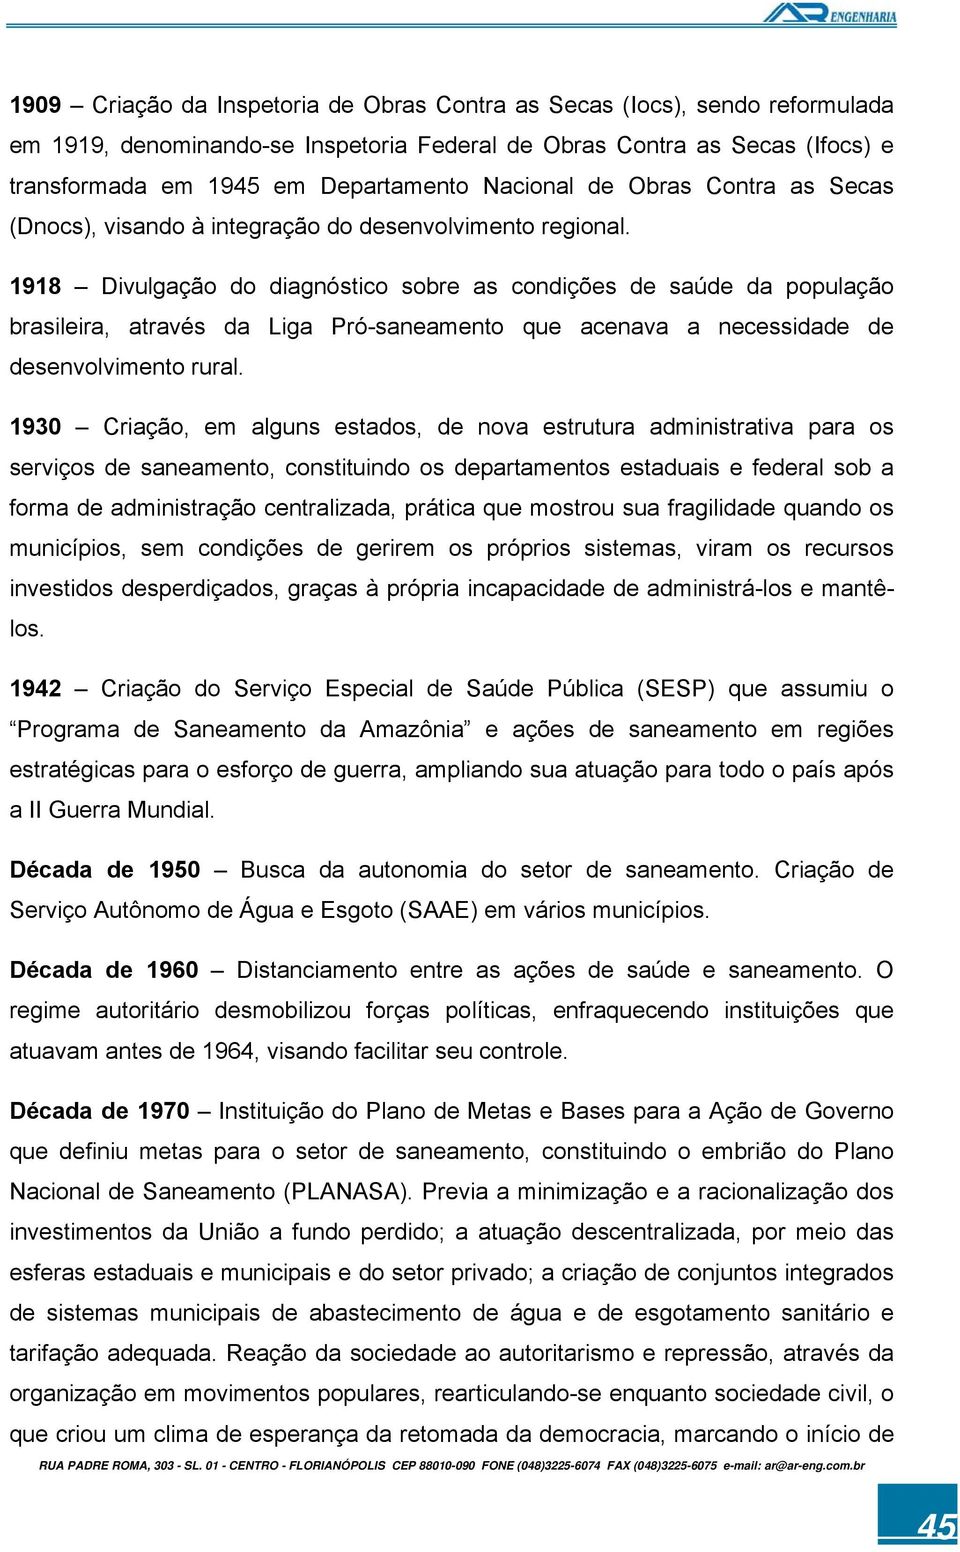 1918 Divulgação do diagnóstico sobre as condições de saúde da população brasileira, através da Liga Pró-saneamento que acenava a necessidade de desenvolvimento rural.